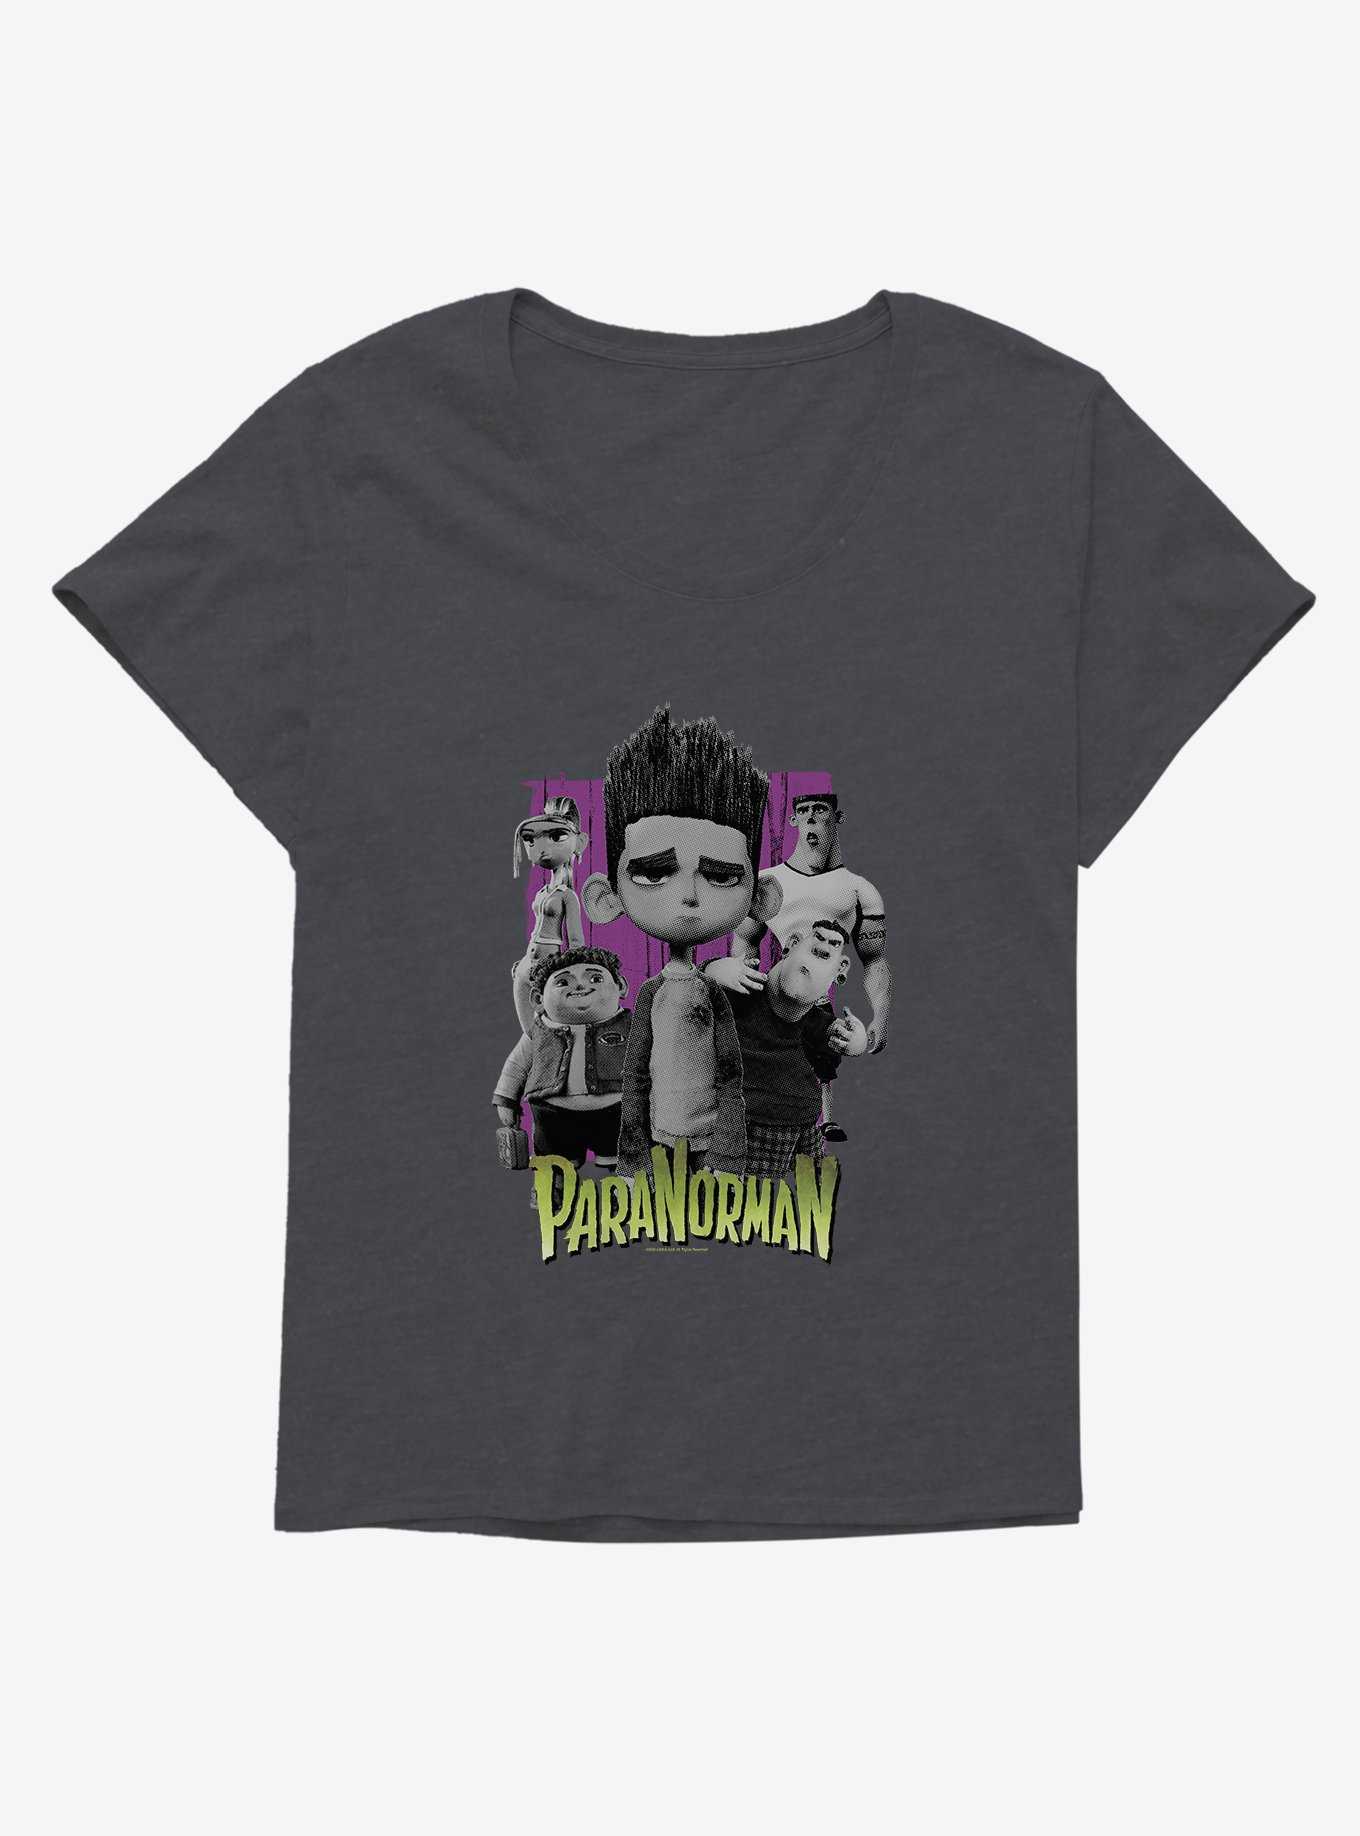 Paranorman Group Portrait Girls T-Shirt Plus Size, , hi-res